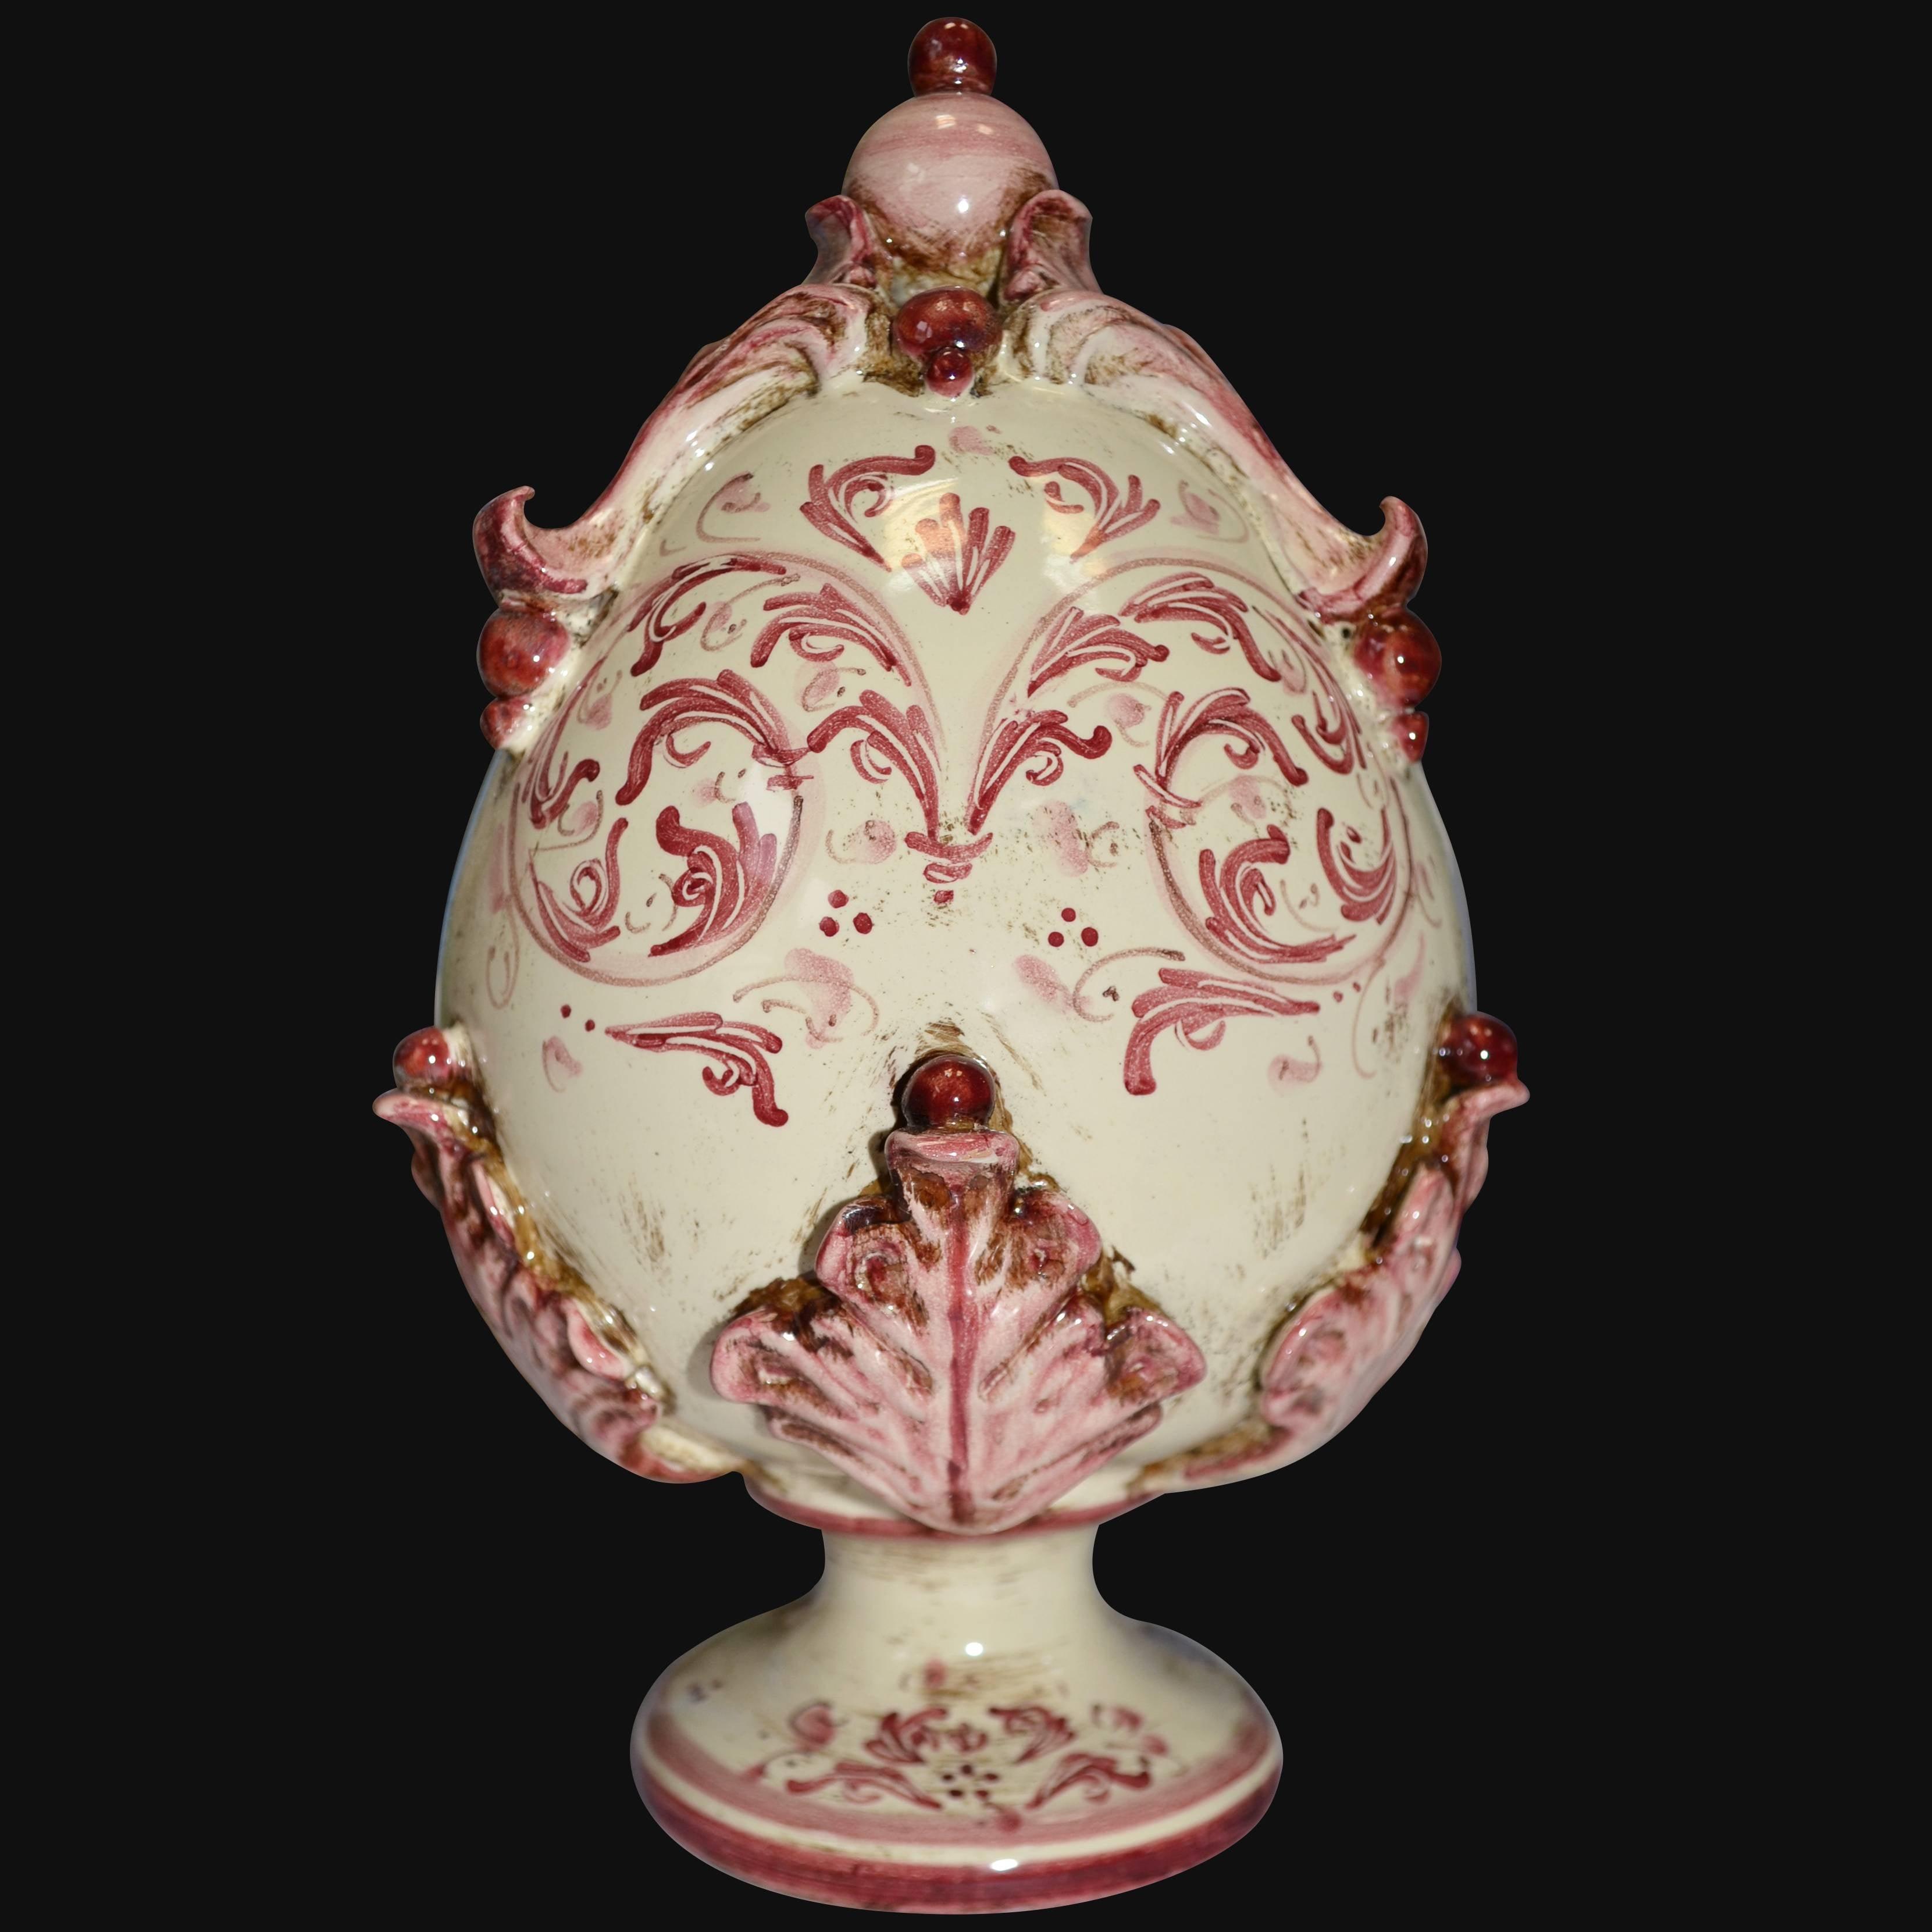 Uovo in ceramica h 25 plastico Sofia tricolore - Ceramiche di Caltagirone - Ceramiche di Caltagirone Sofia